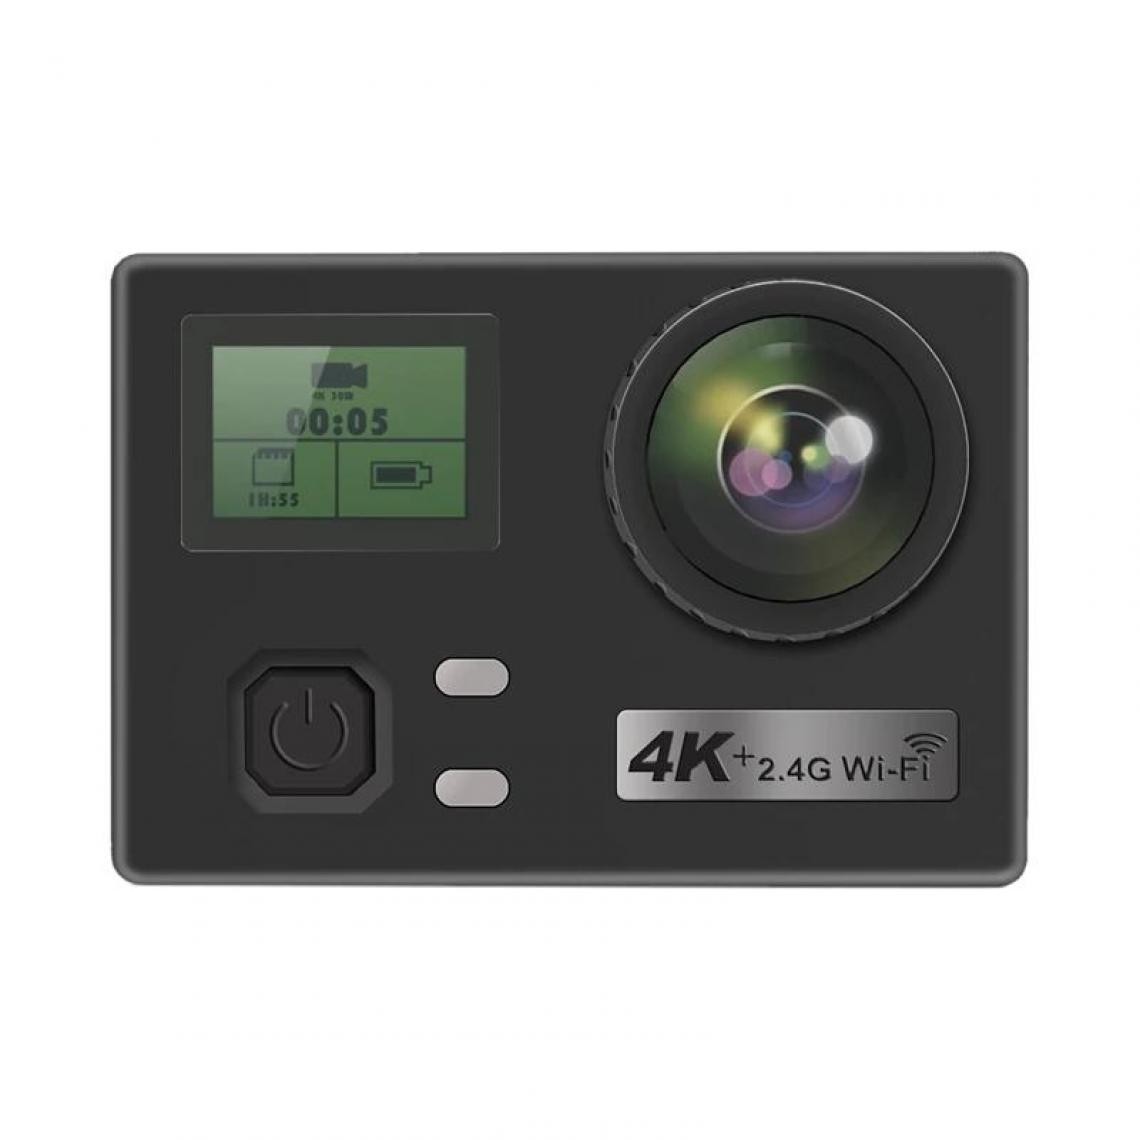 Universal - Caméra d'action 4K HD anti-secouer 30 m sous l'eau imperméable ultra-mince caméra WiFi avec kit d'accessoires de caméra | Caméra d'action d'action(Le noir) - Accessoires caméra